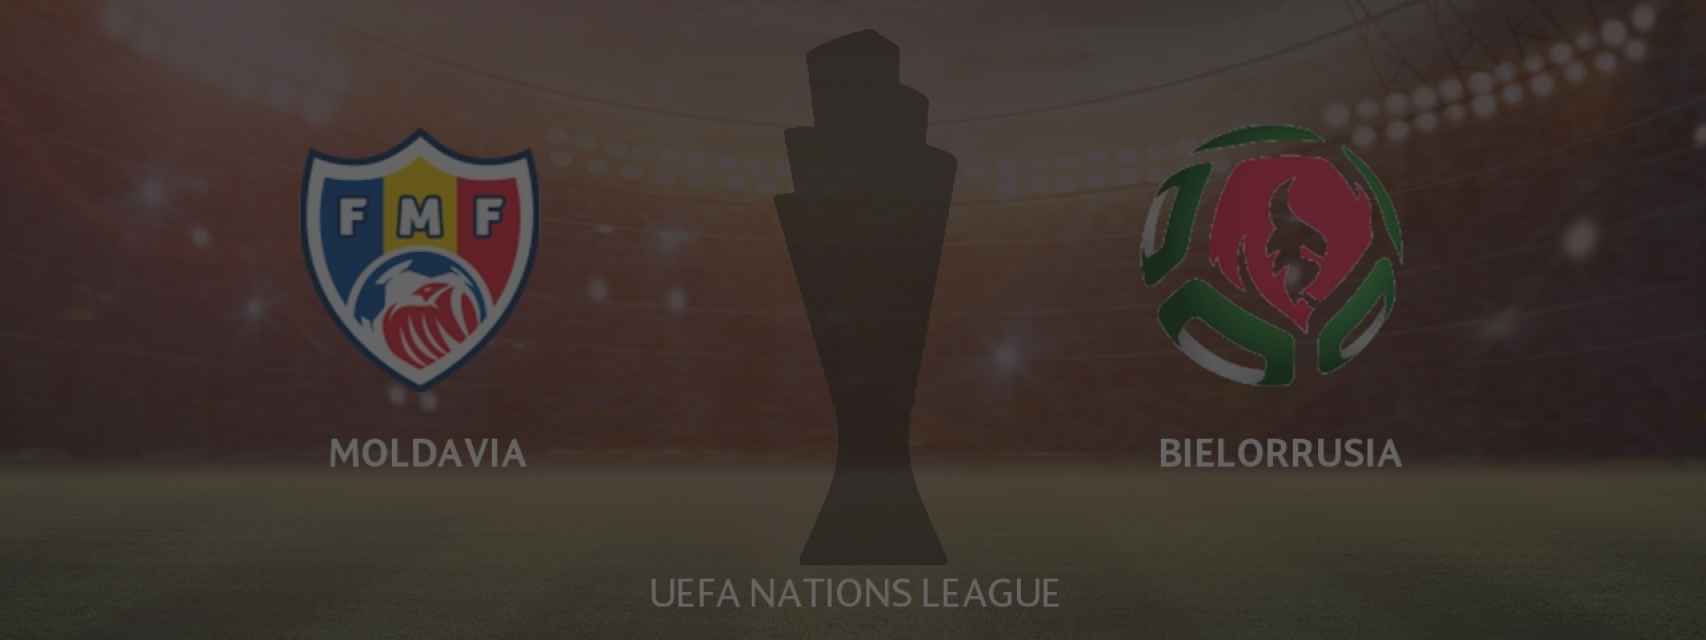 Moldavia - Bielorrusia, UEFA Nations League